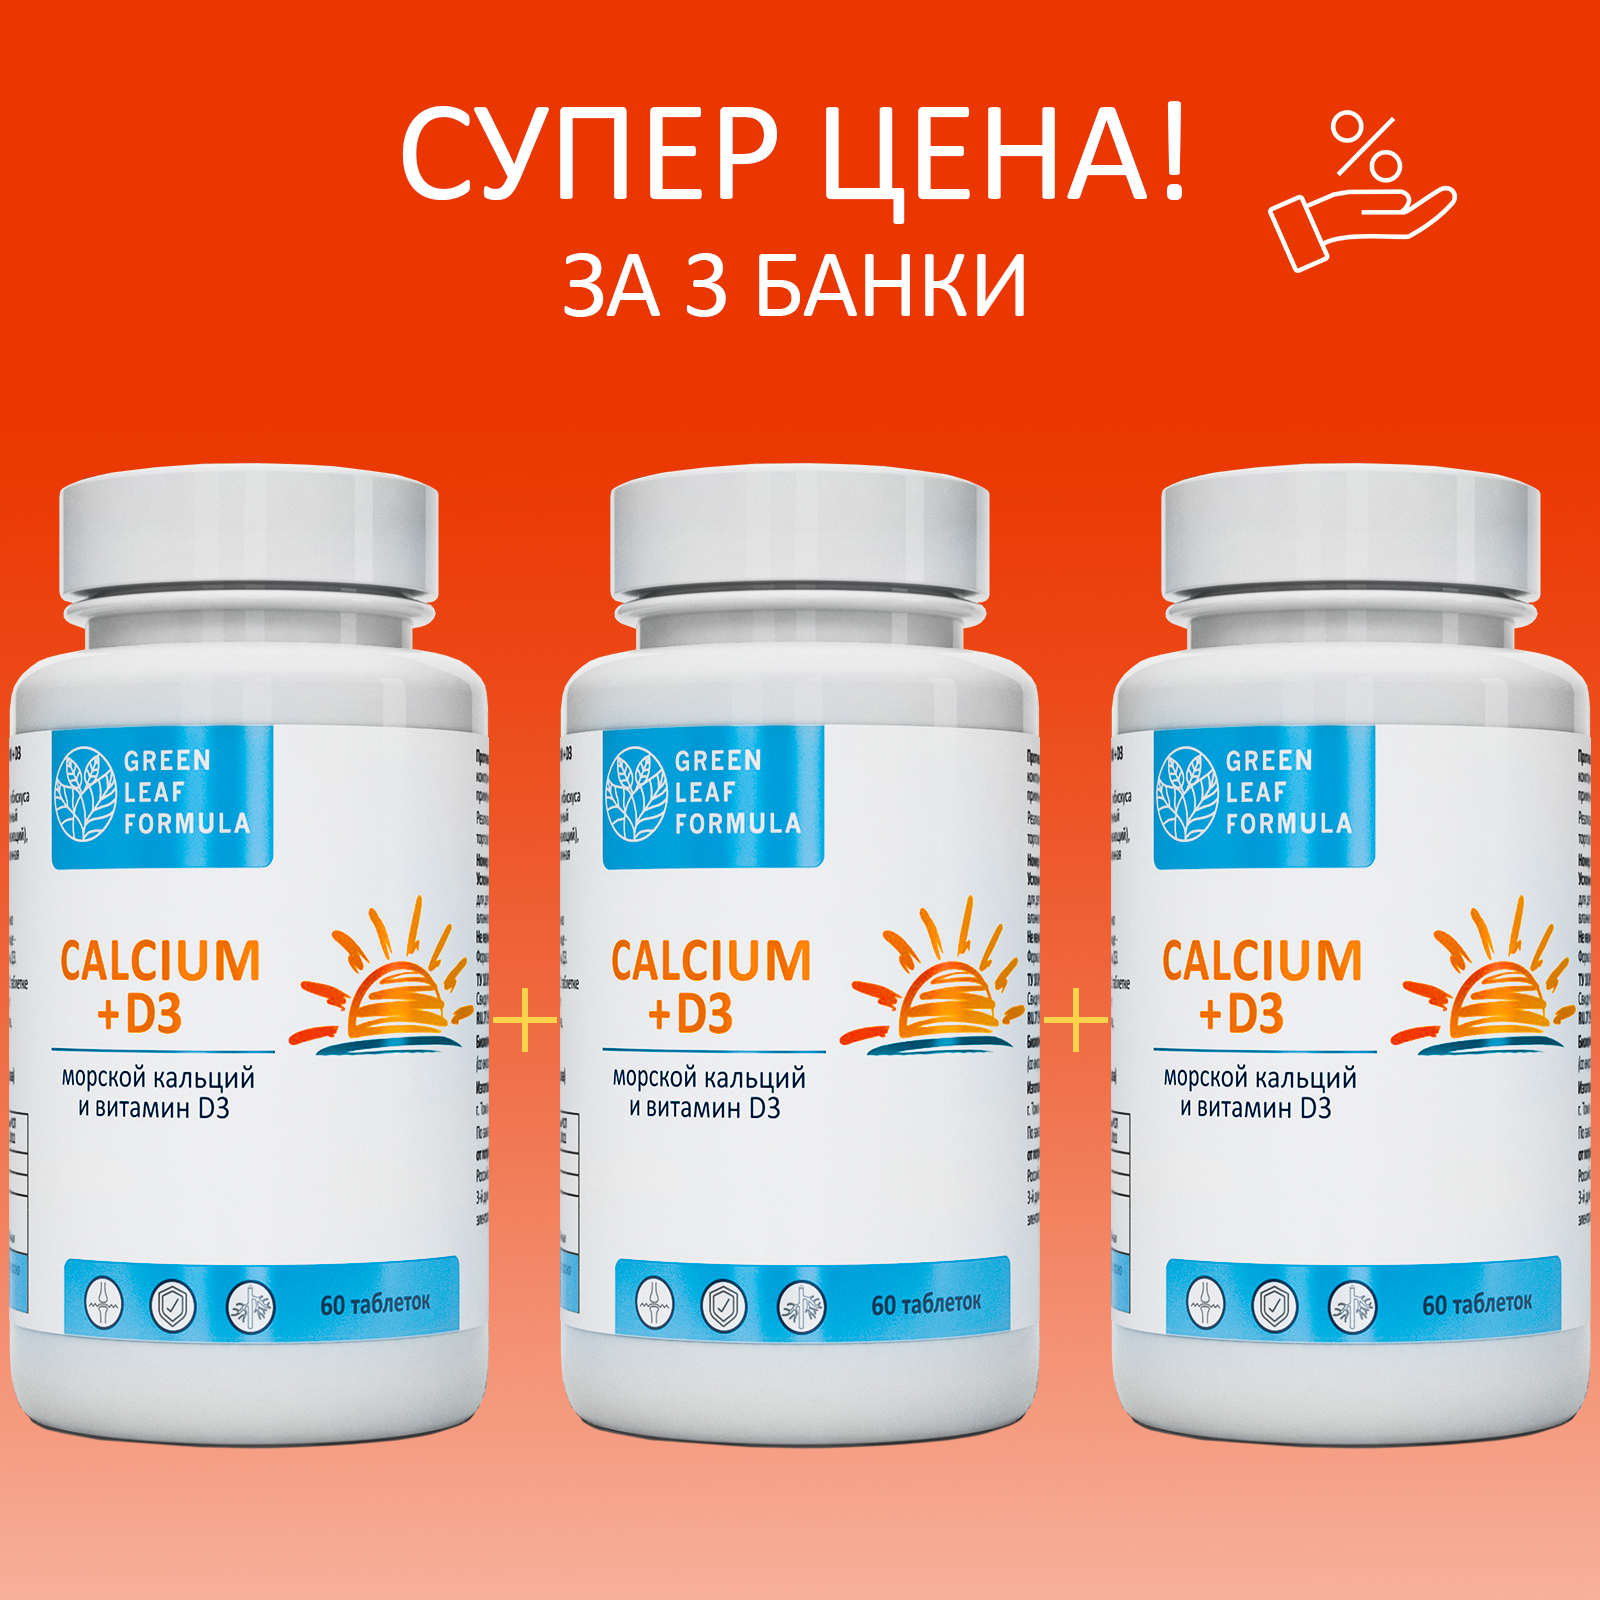 Calcium D3 Кальций Д3 Green Leaf Formula витамины для костей и суставов 3 банки по 60 таблеток - фото 2